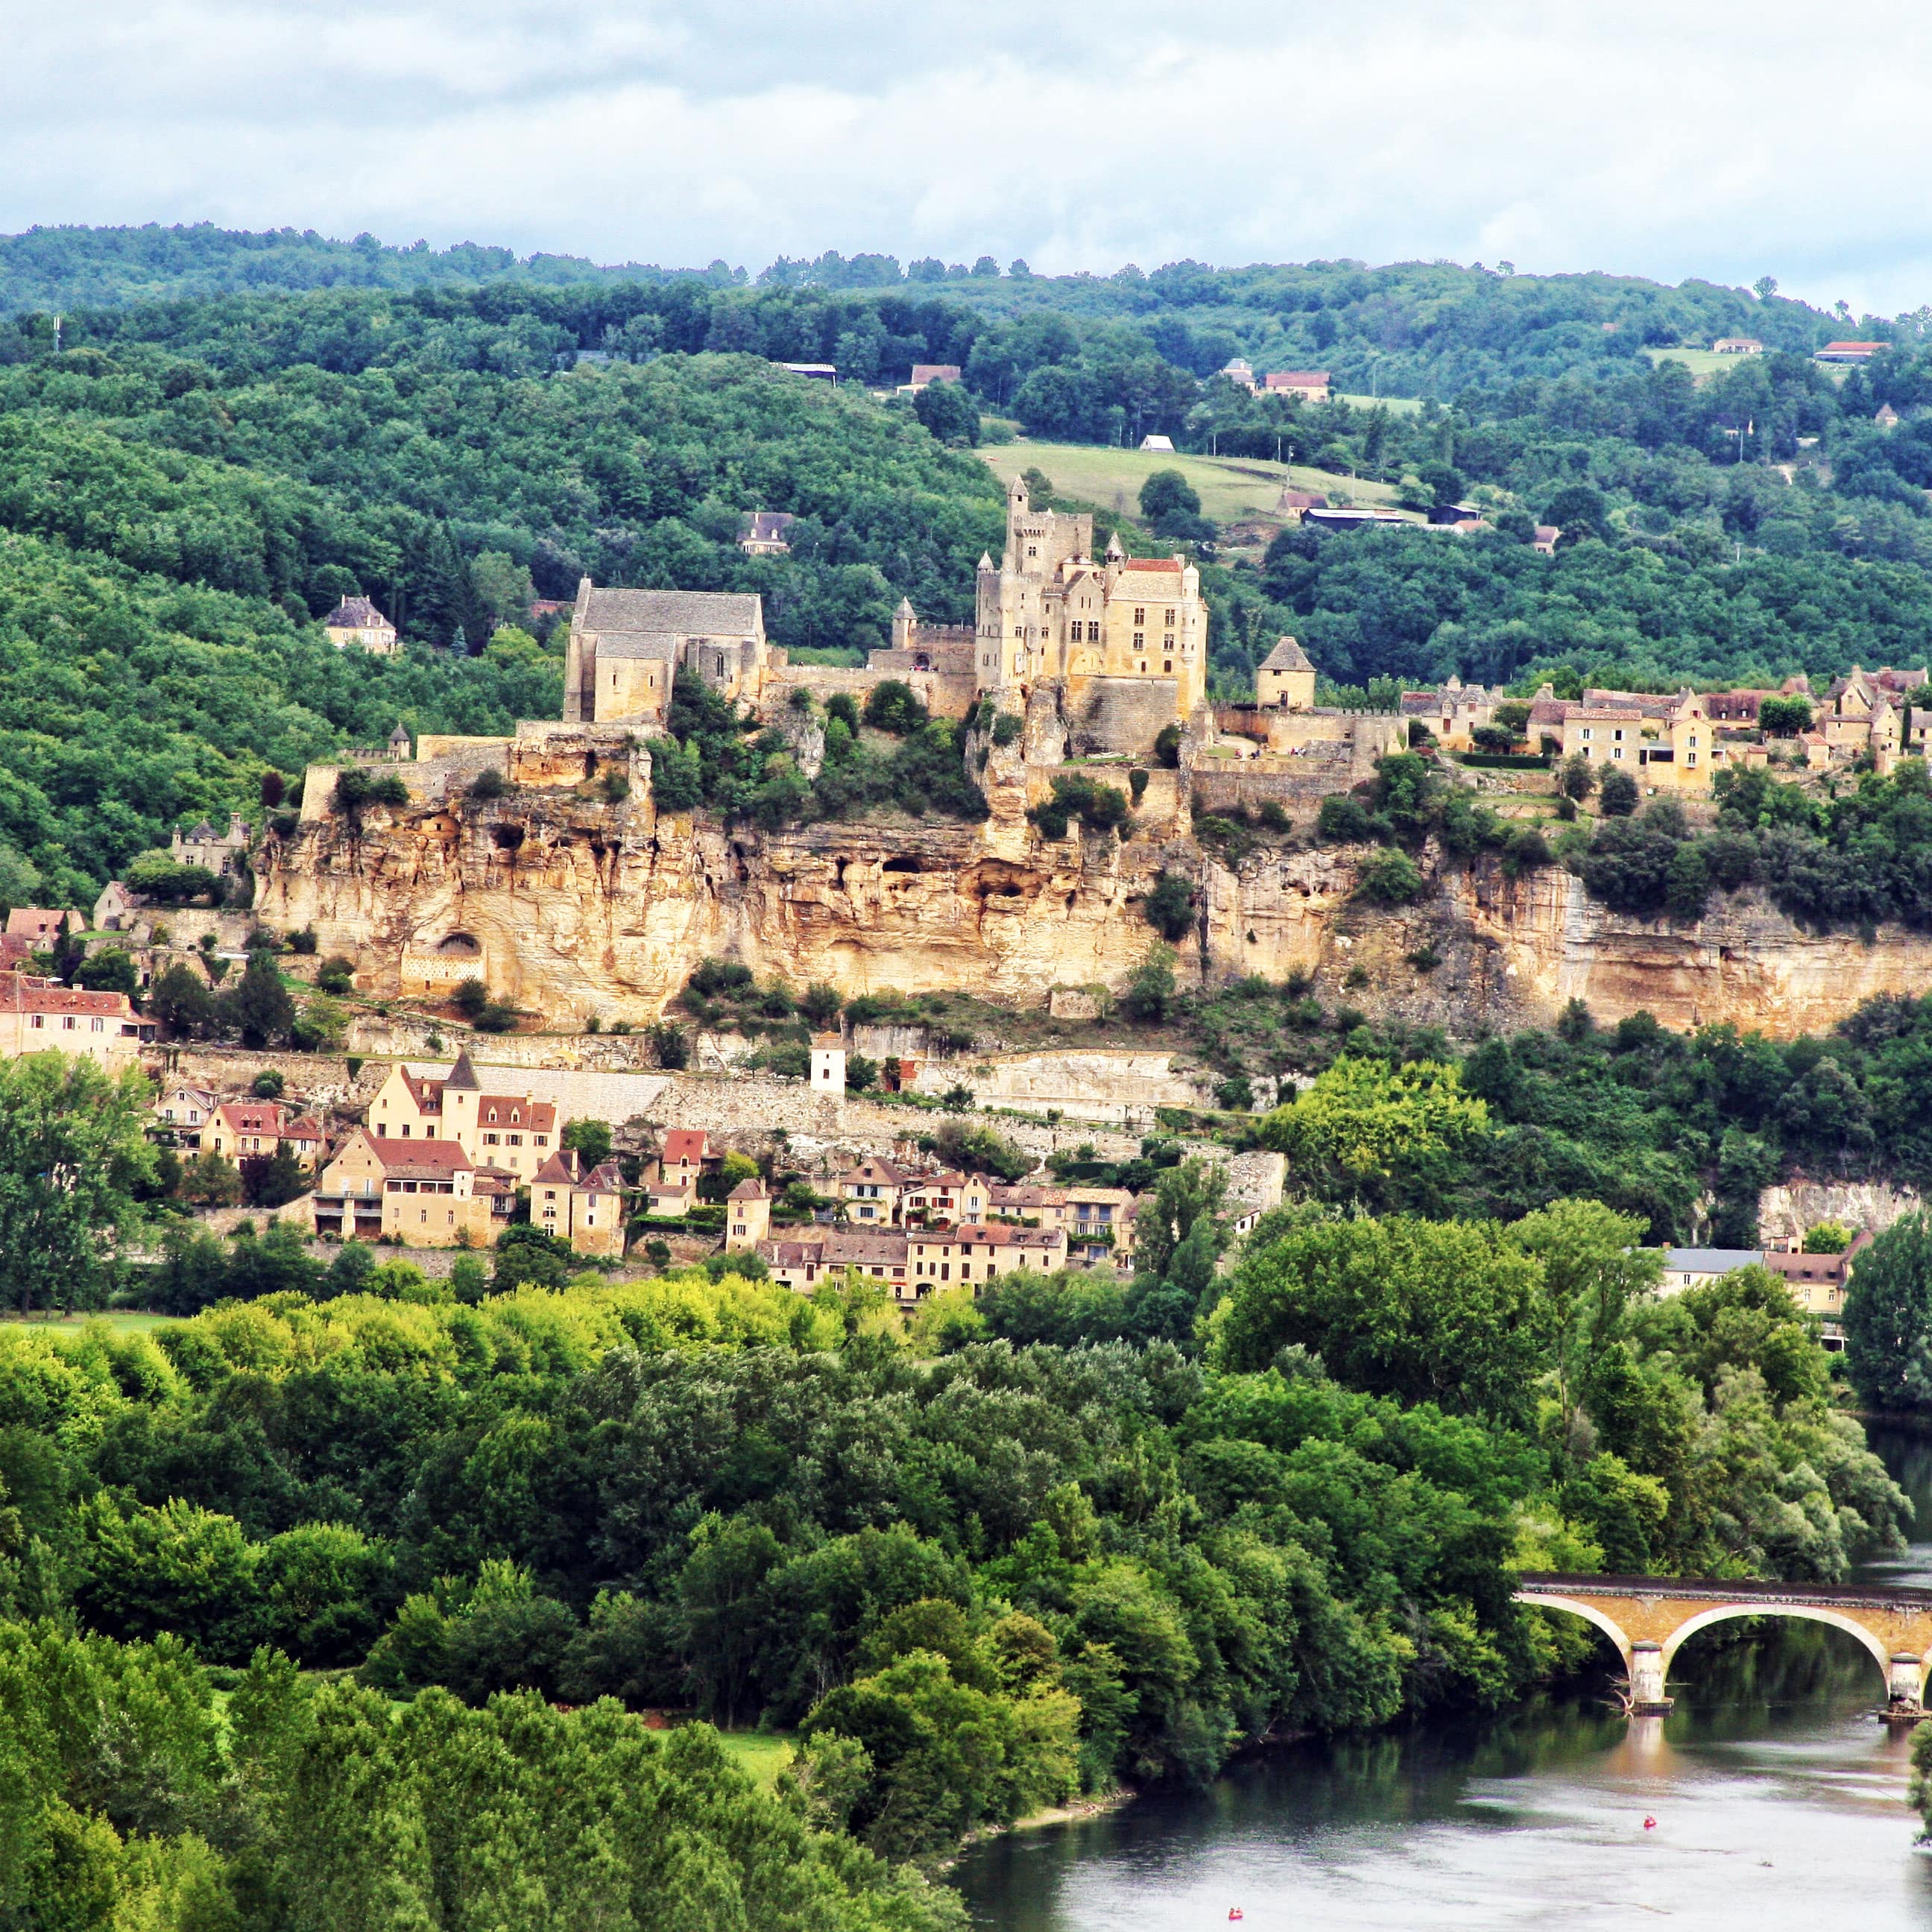 Location de vacances en Dordogne : à la découverte des 1 001 châteaux